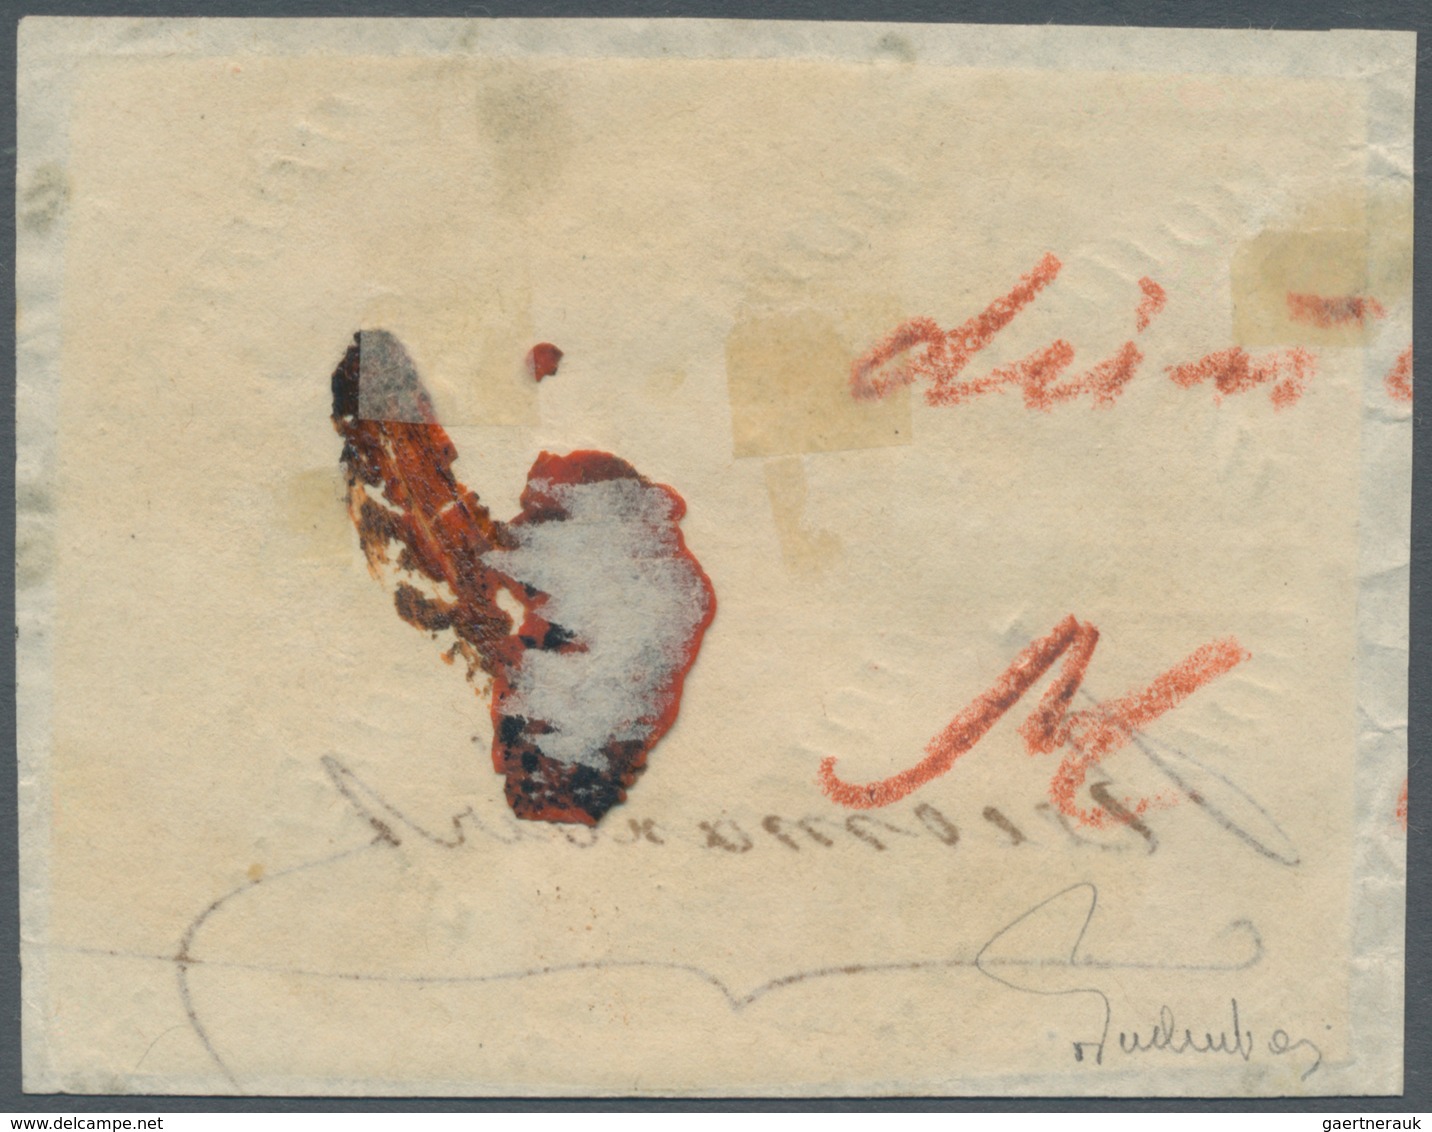 Österreich: 1850, 3 Kr Karminrot, Handpapier Type I A1, Waagerechter 6er-Block, Allseits Breitrandig - Sonstige & Ohne Zuordnung